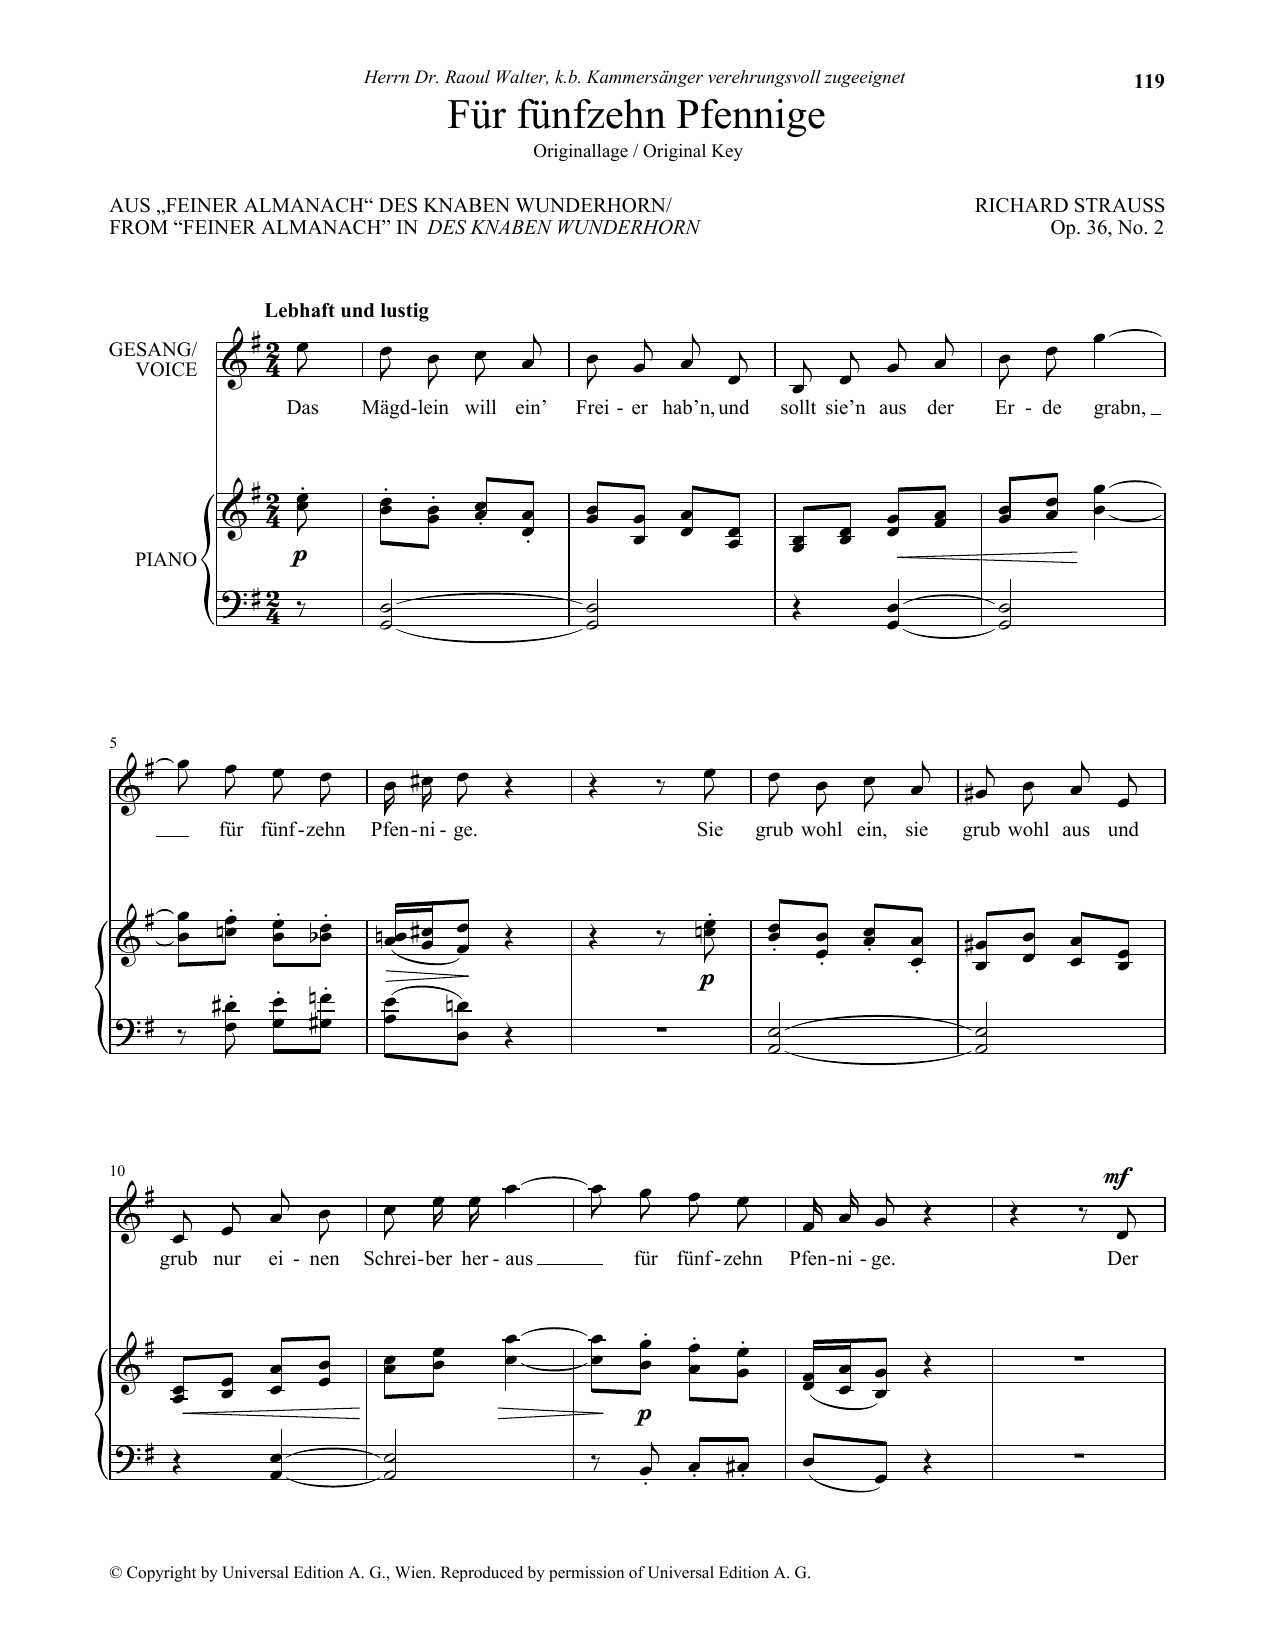 Download Richard Strauss Fur Funfzehn Pfennige (High Voice) Sheet Music